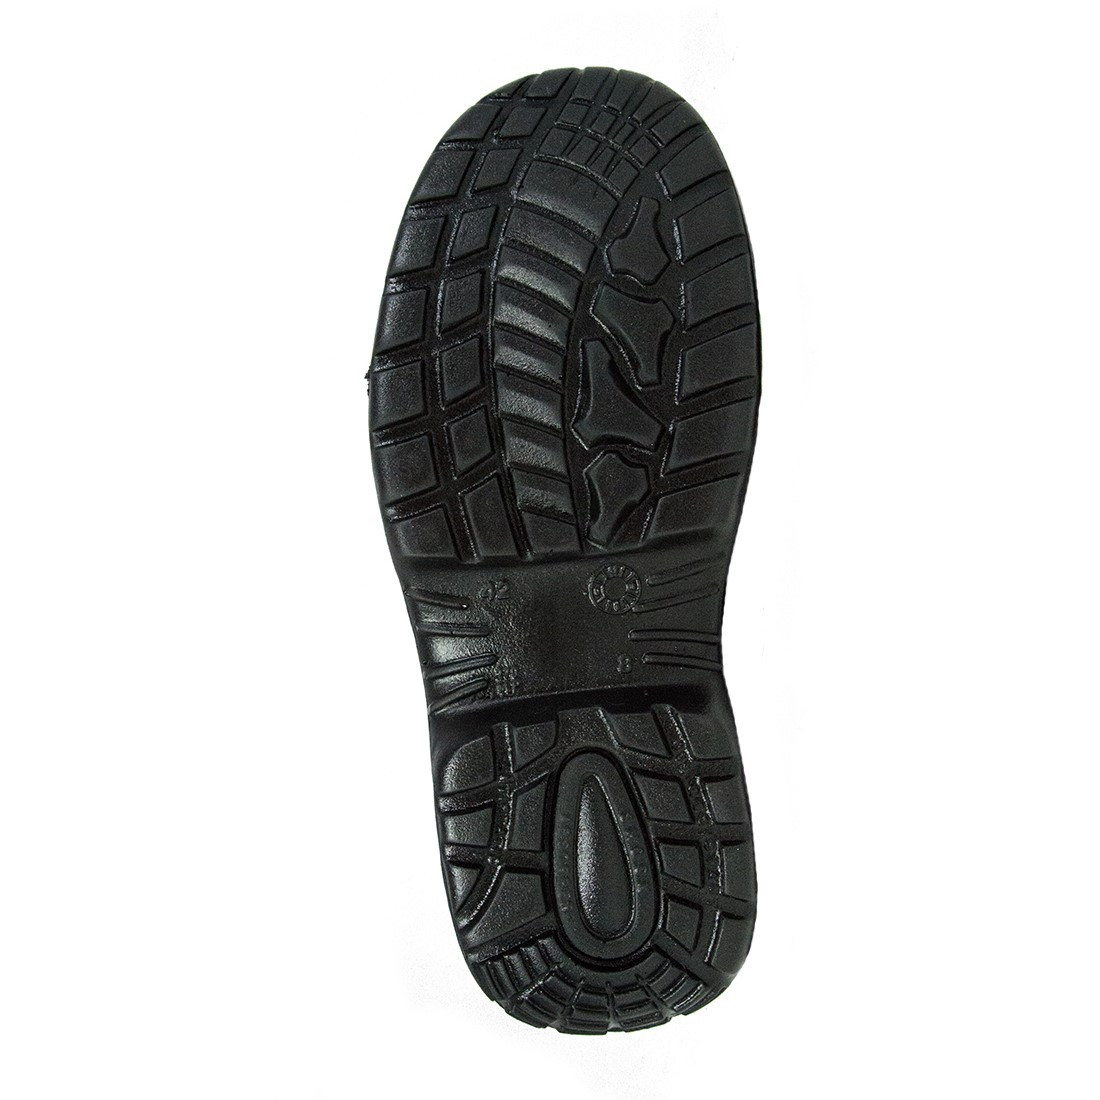 Pantofi Termini S3 SRC - Incaltaminte de protectie | Bocanci, Pantofi, Sandale, Cizme